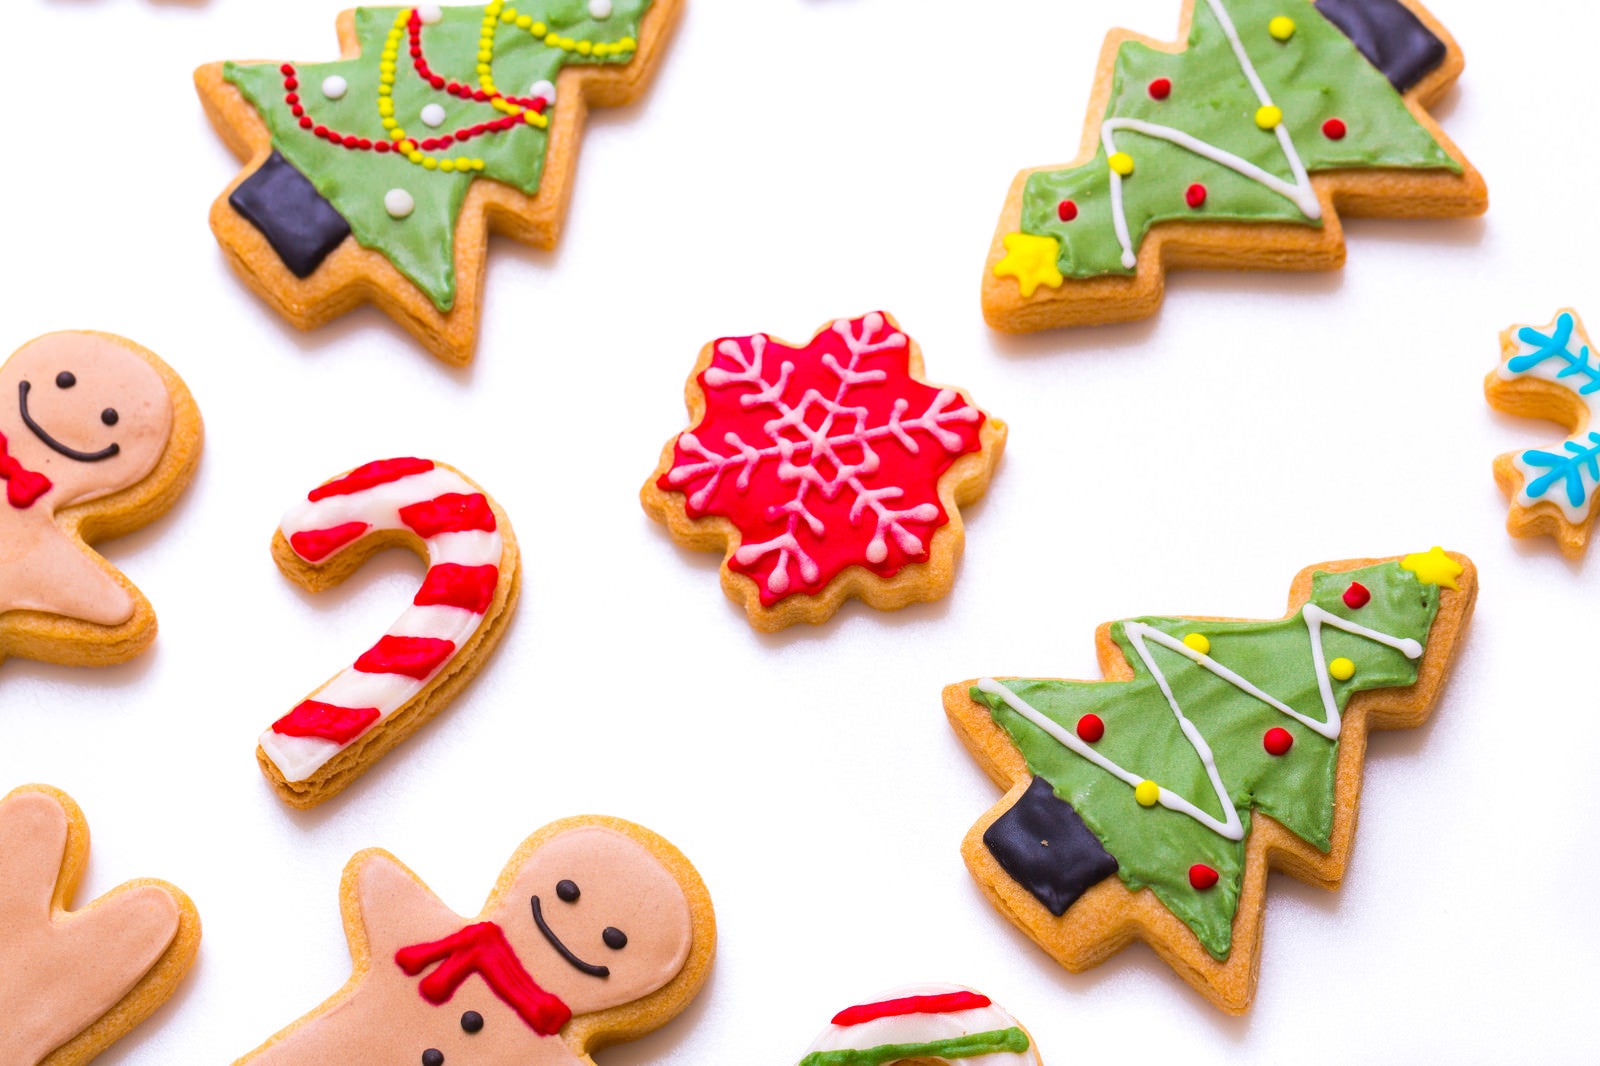 「クリスマスのアイシングクッキー」の写真